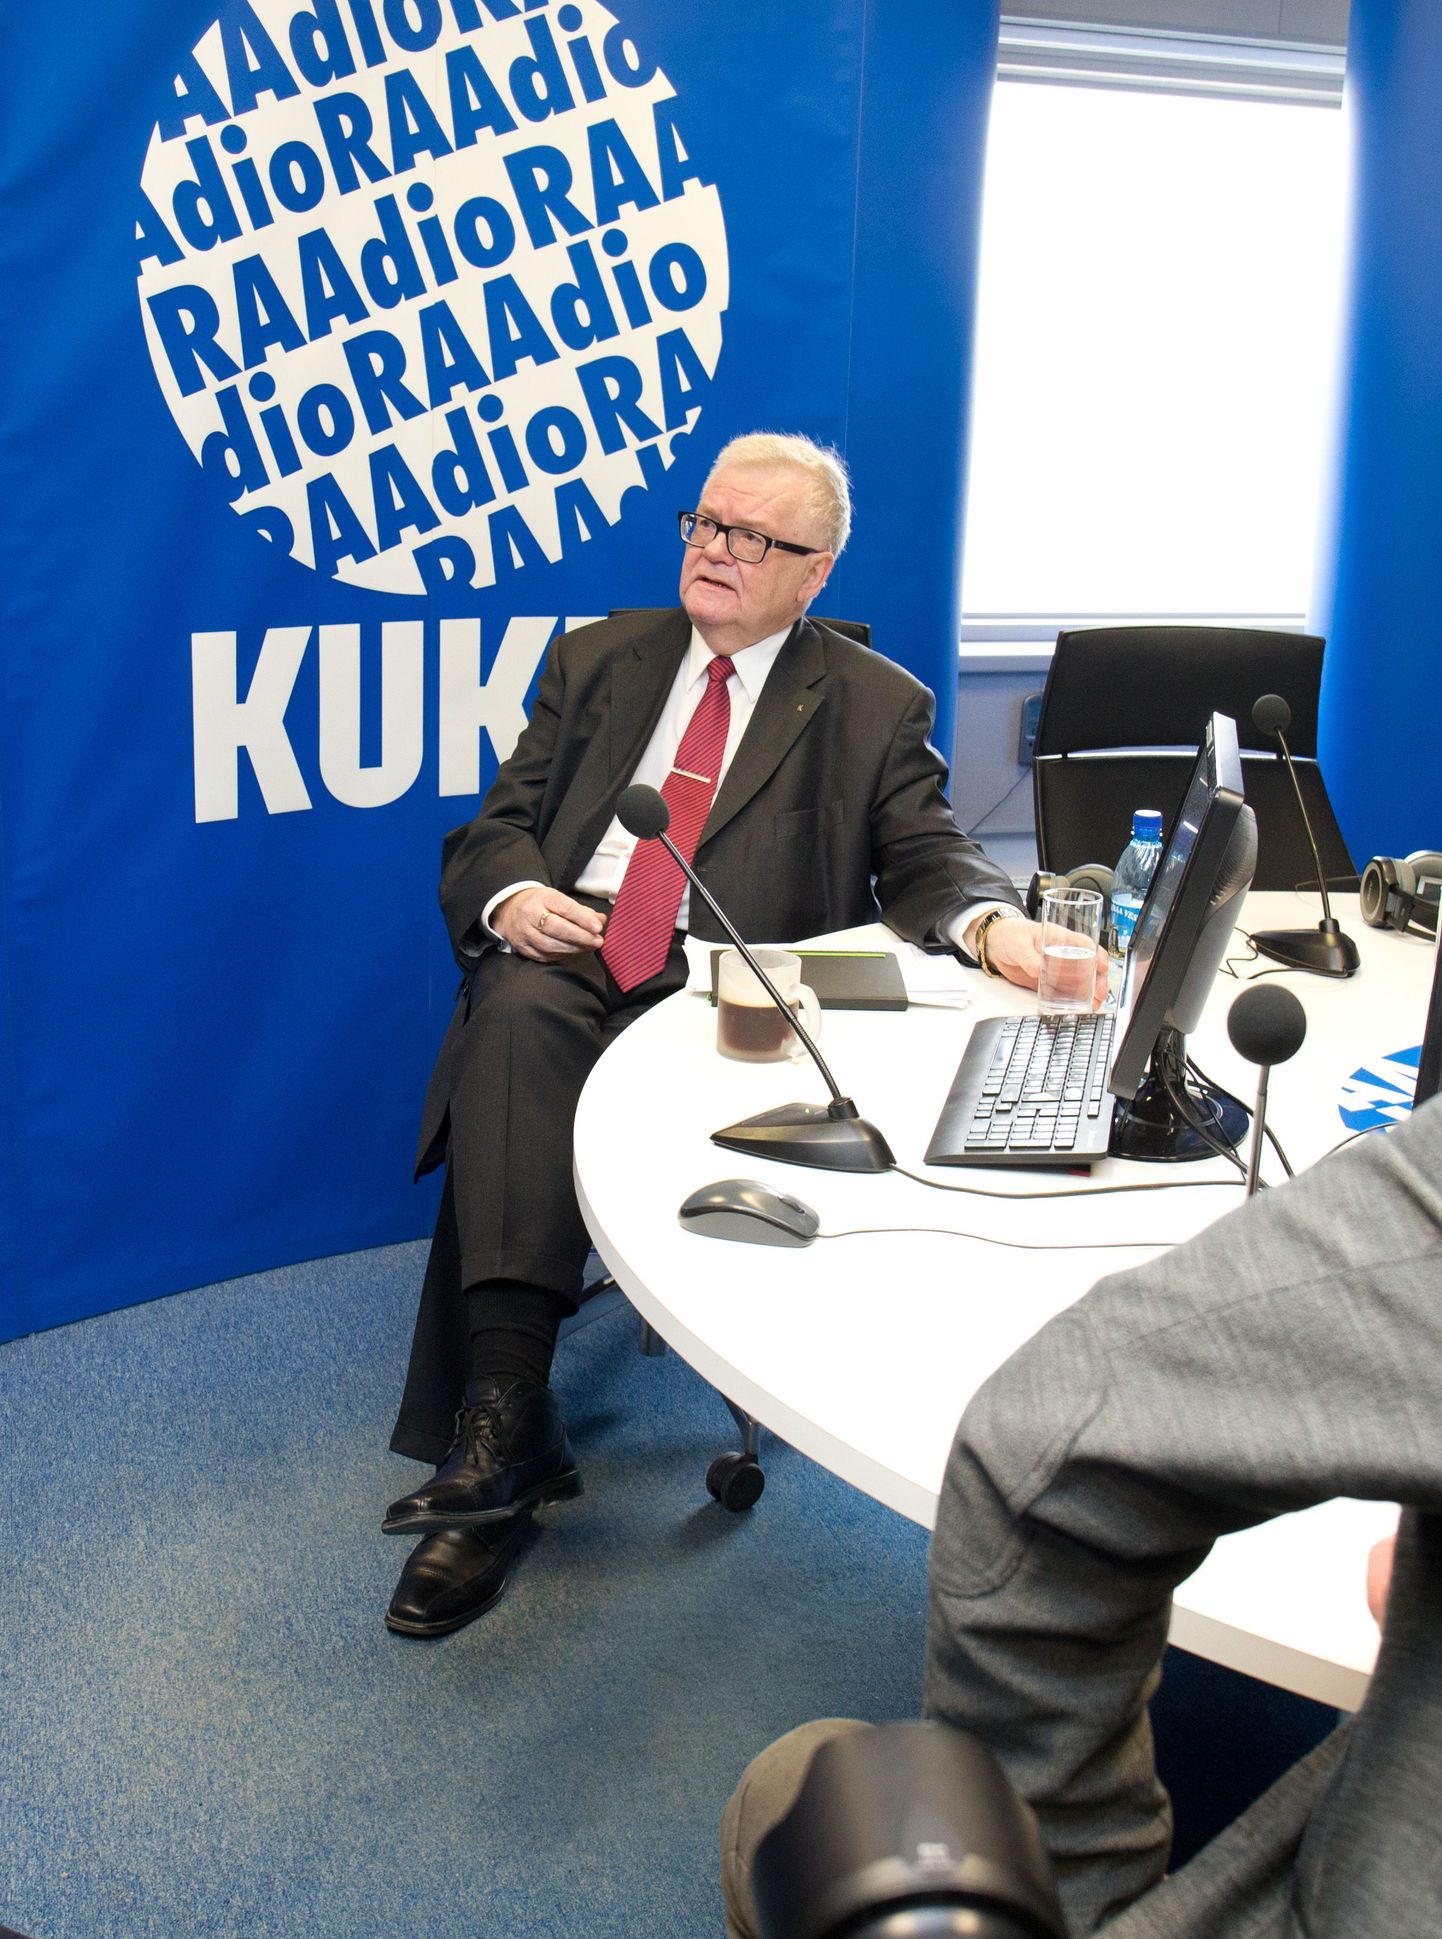 Keskerakonna esimees ja partei peaministrikandidaat Edgar Savisaar Tallinnas Kuku raadios valimisdebatis peaminister Taavi Rõivasega.